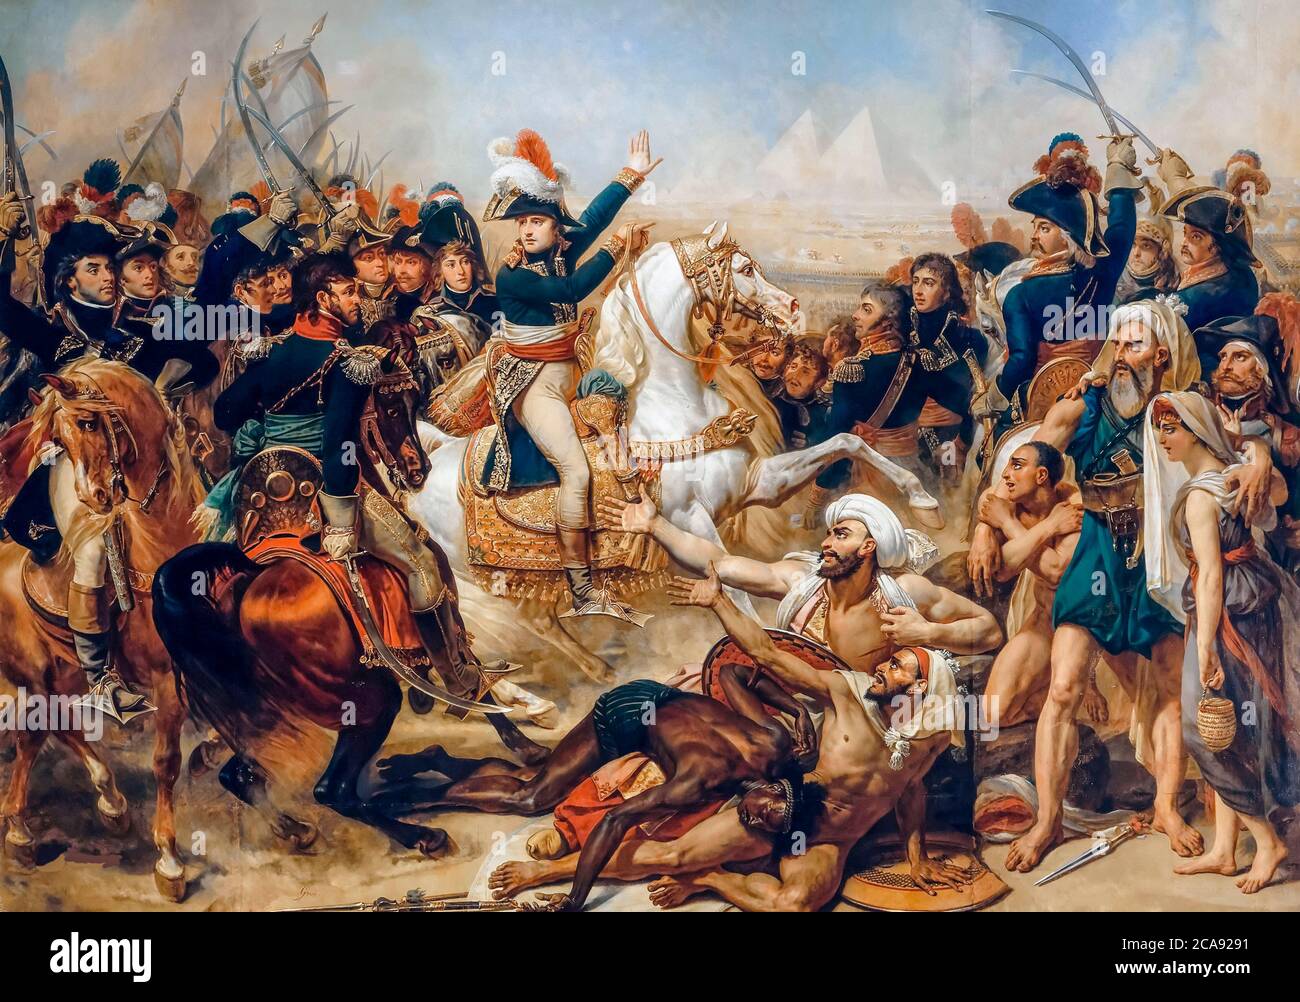 Batalla de las Pirámides, 21 de julio de 1798 (Napoleón Bonaparte, Batalla de Embabeh), pintura de Antoine-Jean Gros, 1810 Foto de stock